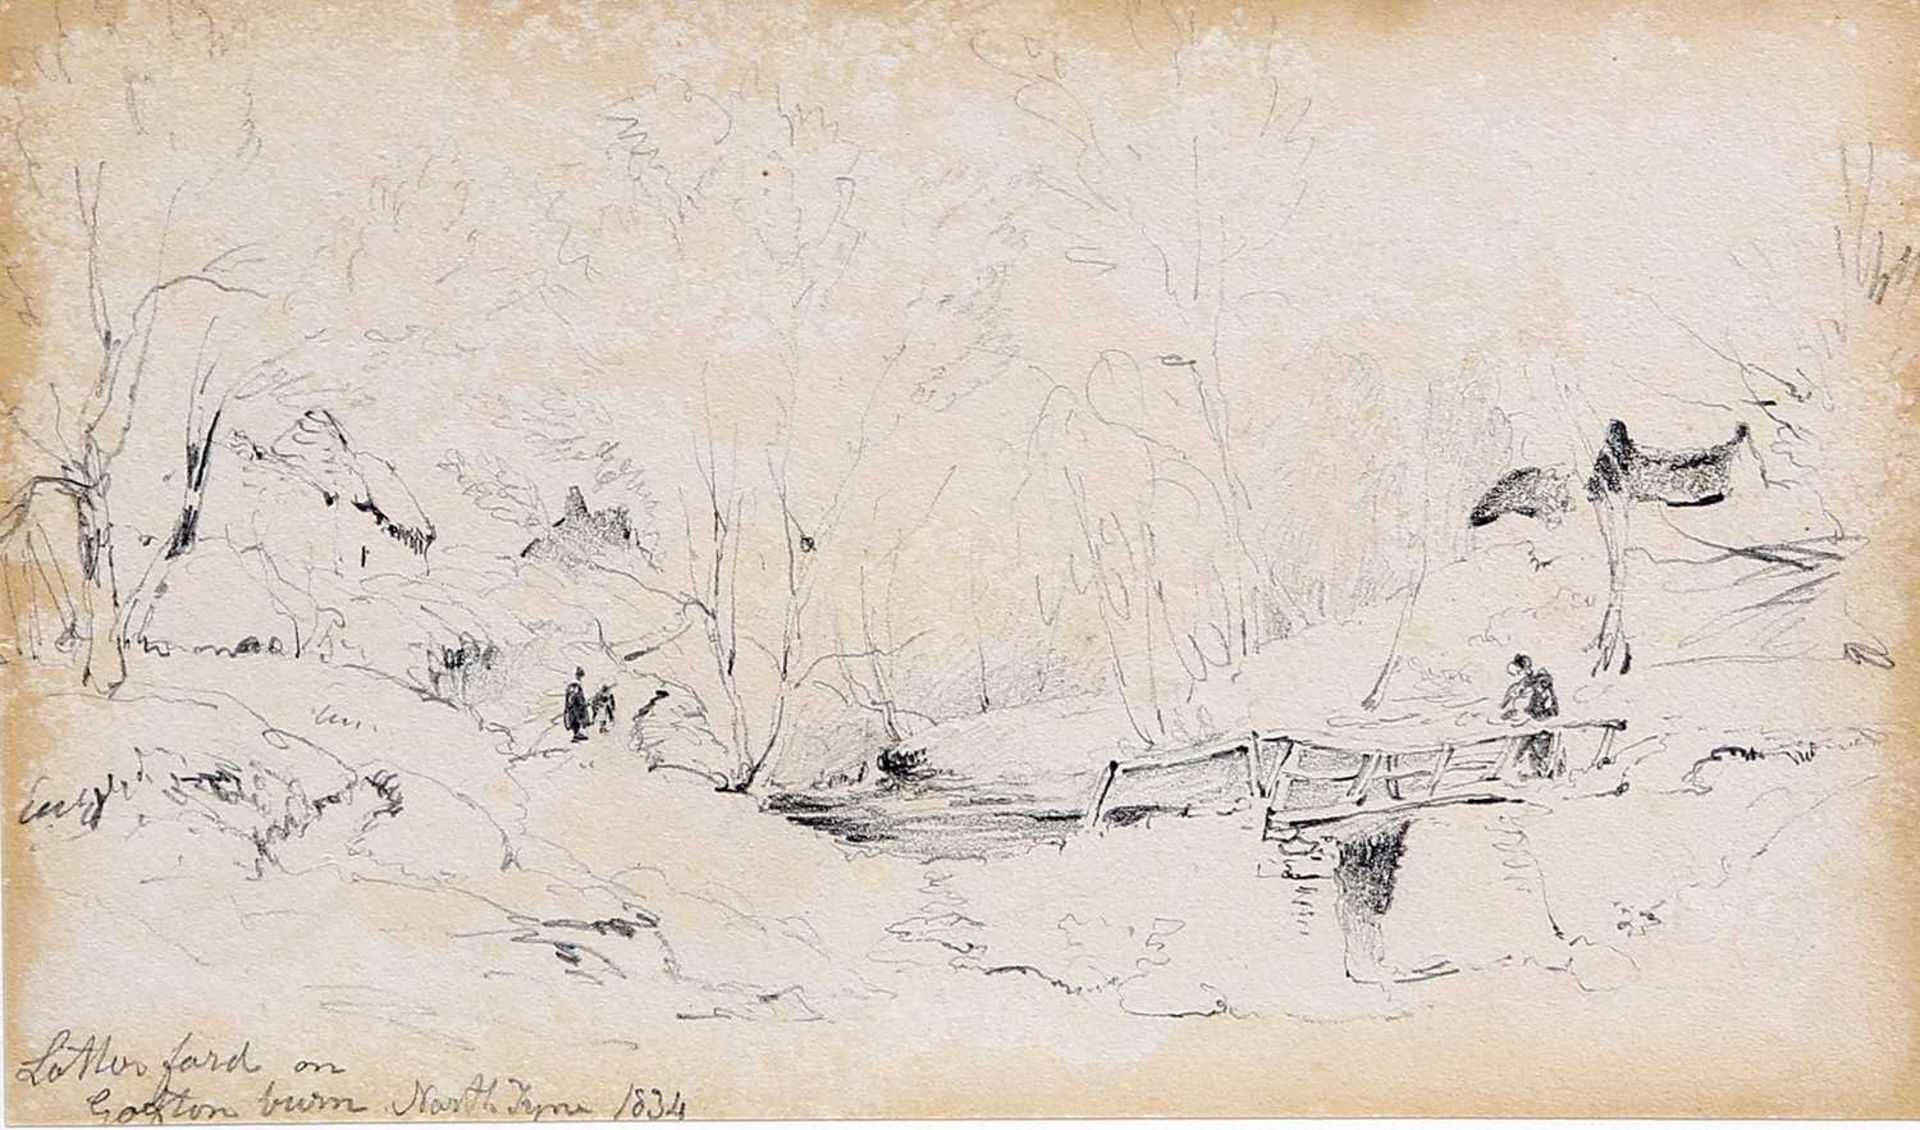 THOMAS MILES RICHARDSON JNR RWS (1813-1890) LATTERFORD ON GOFTON BURN